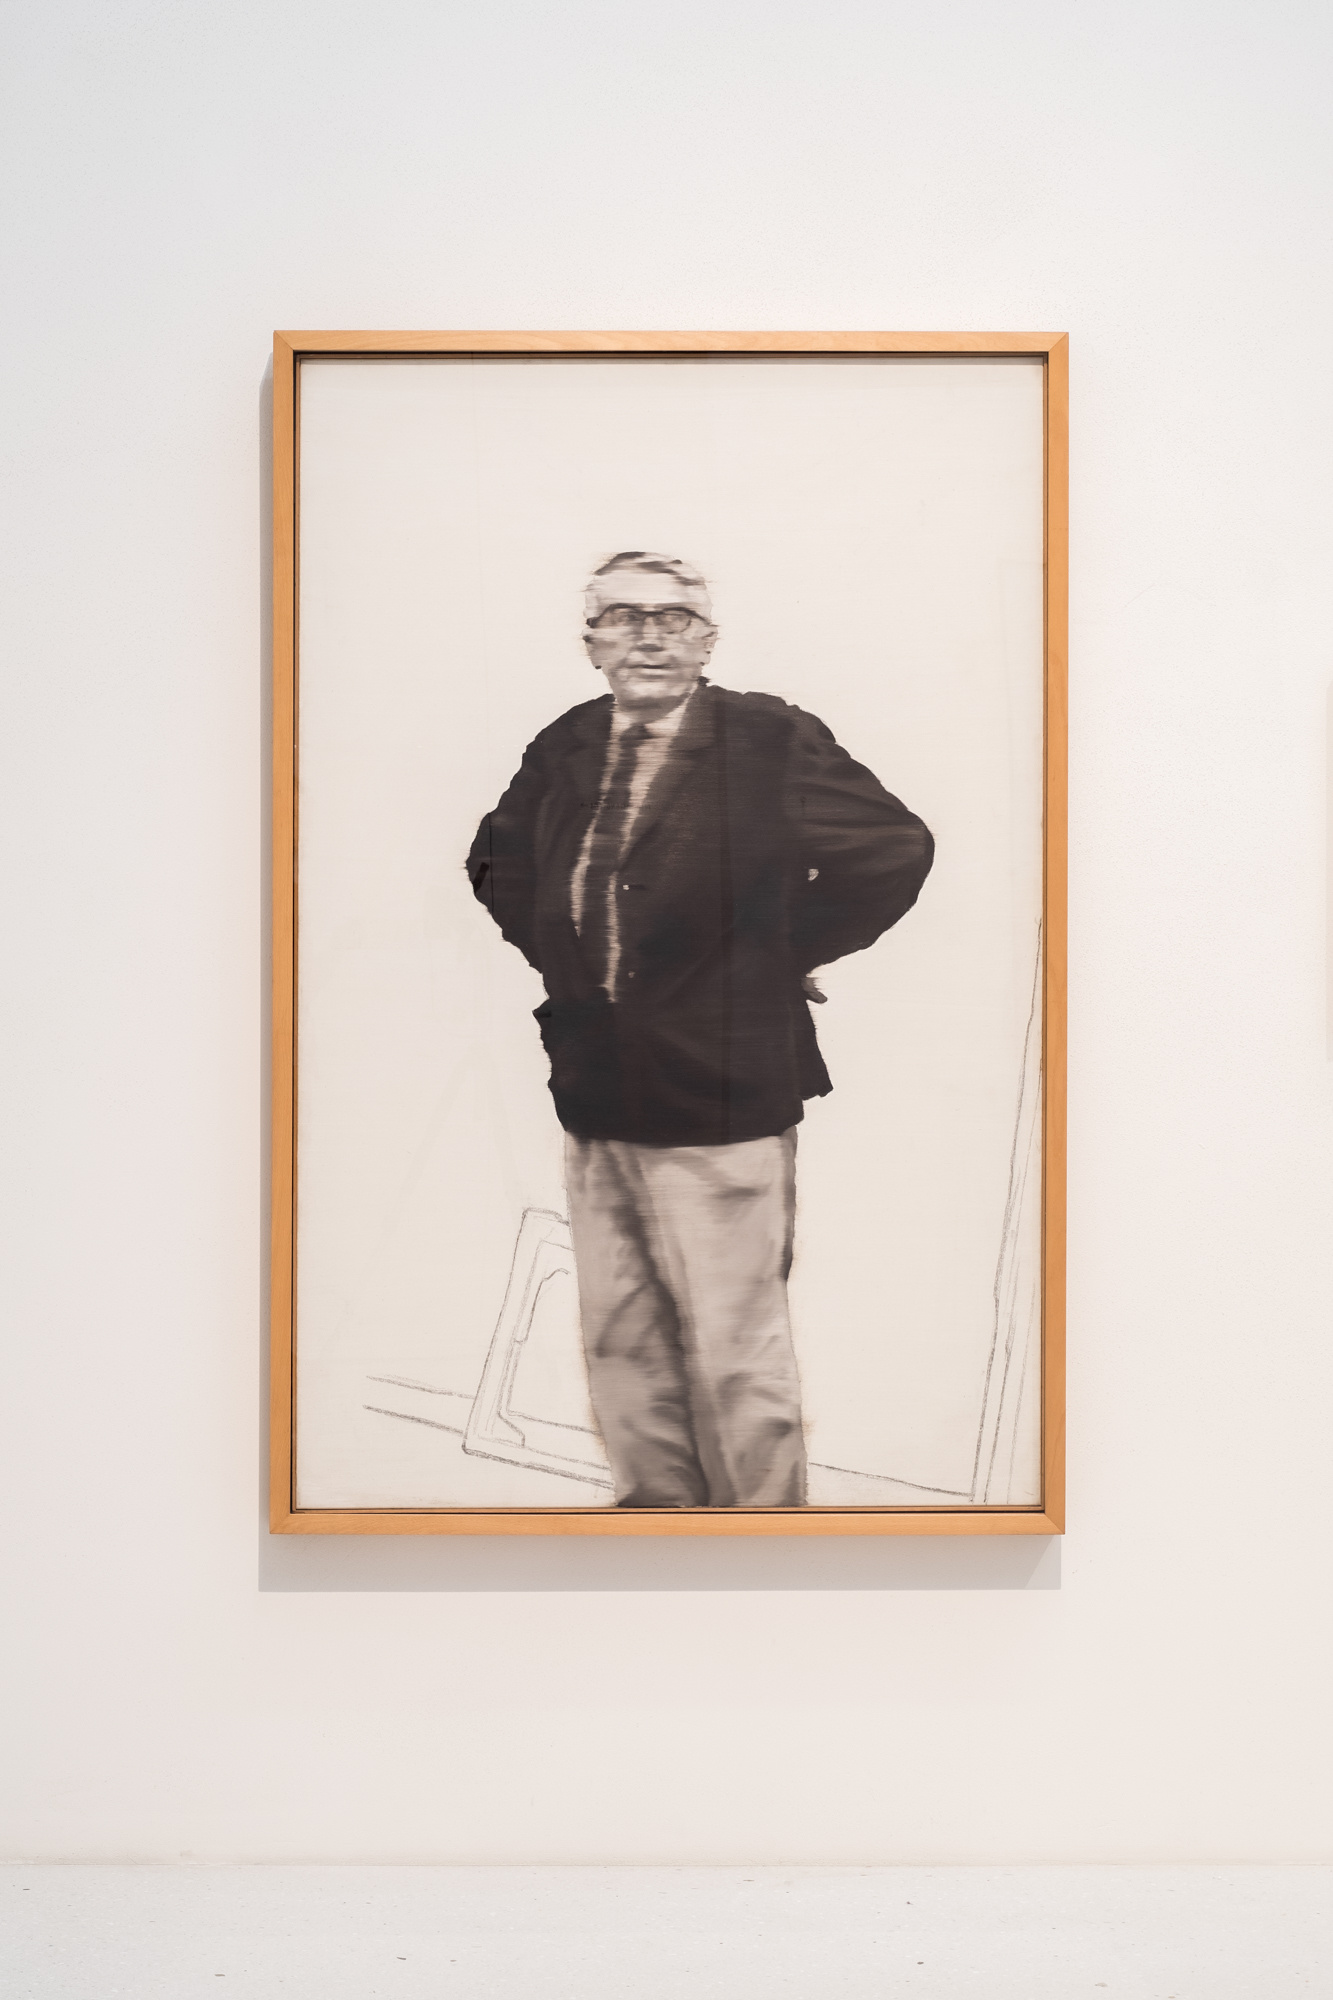 Gerhard Richter - documenta 14